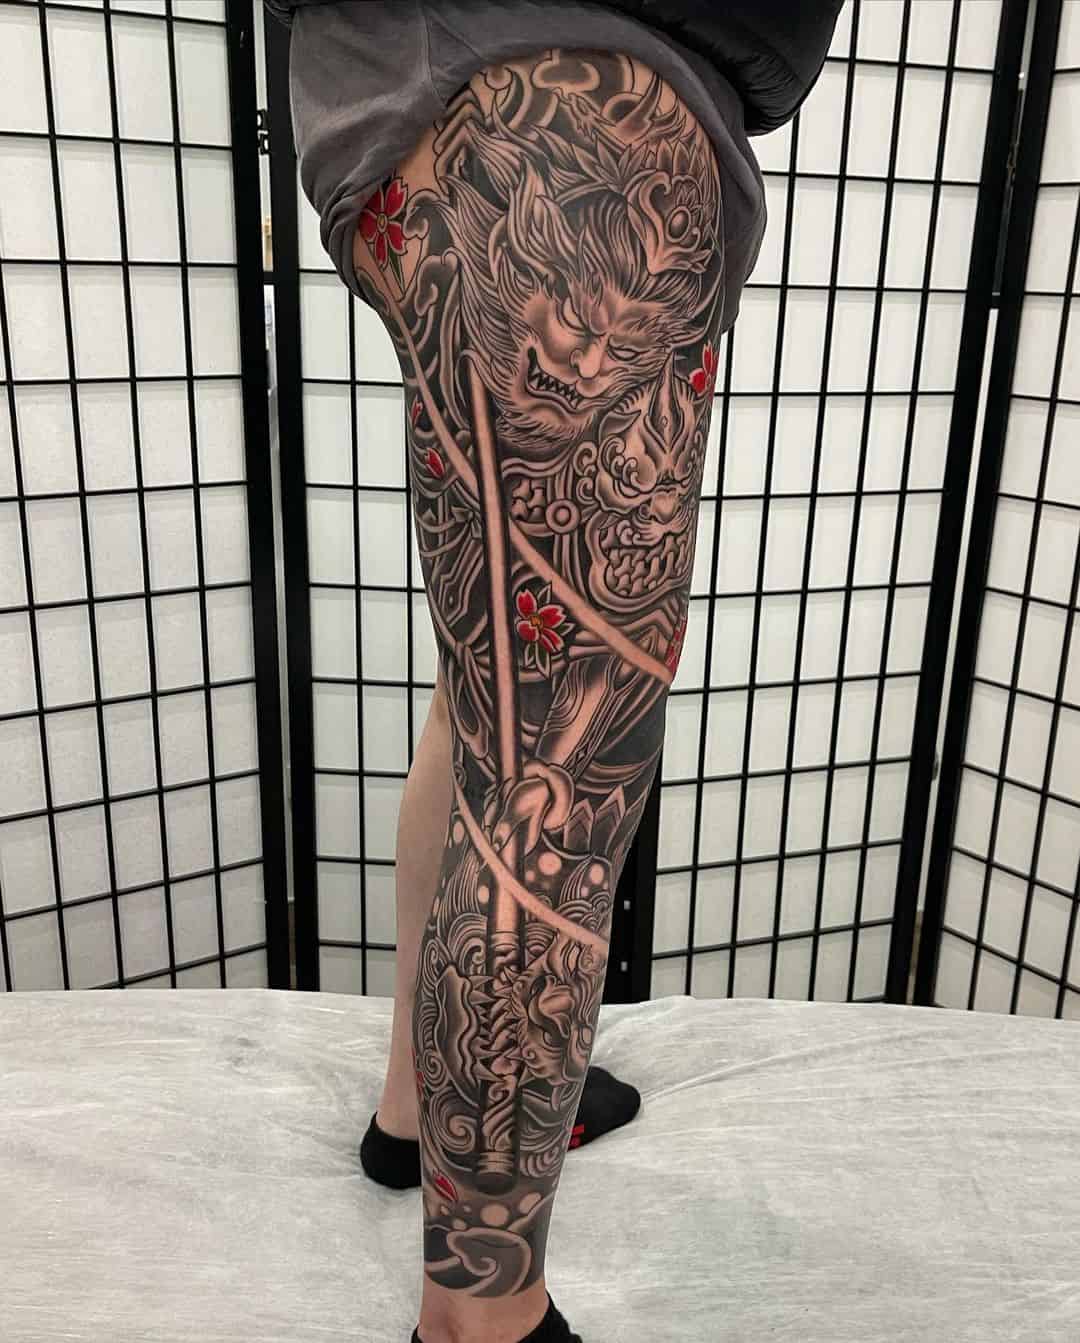 Full leg tattoo